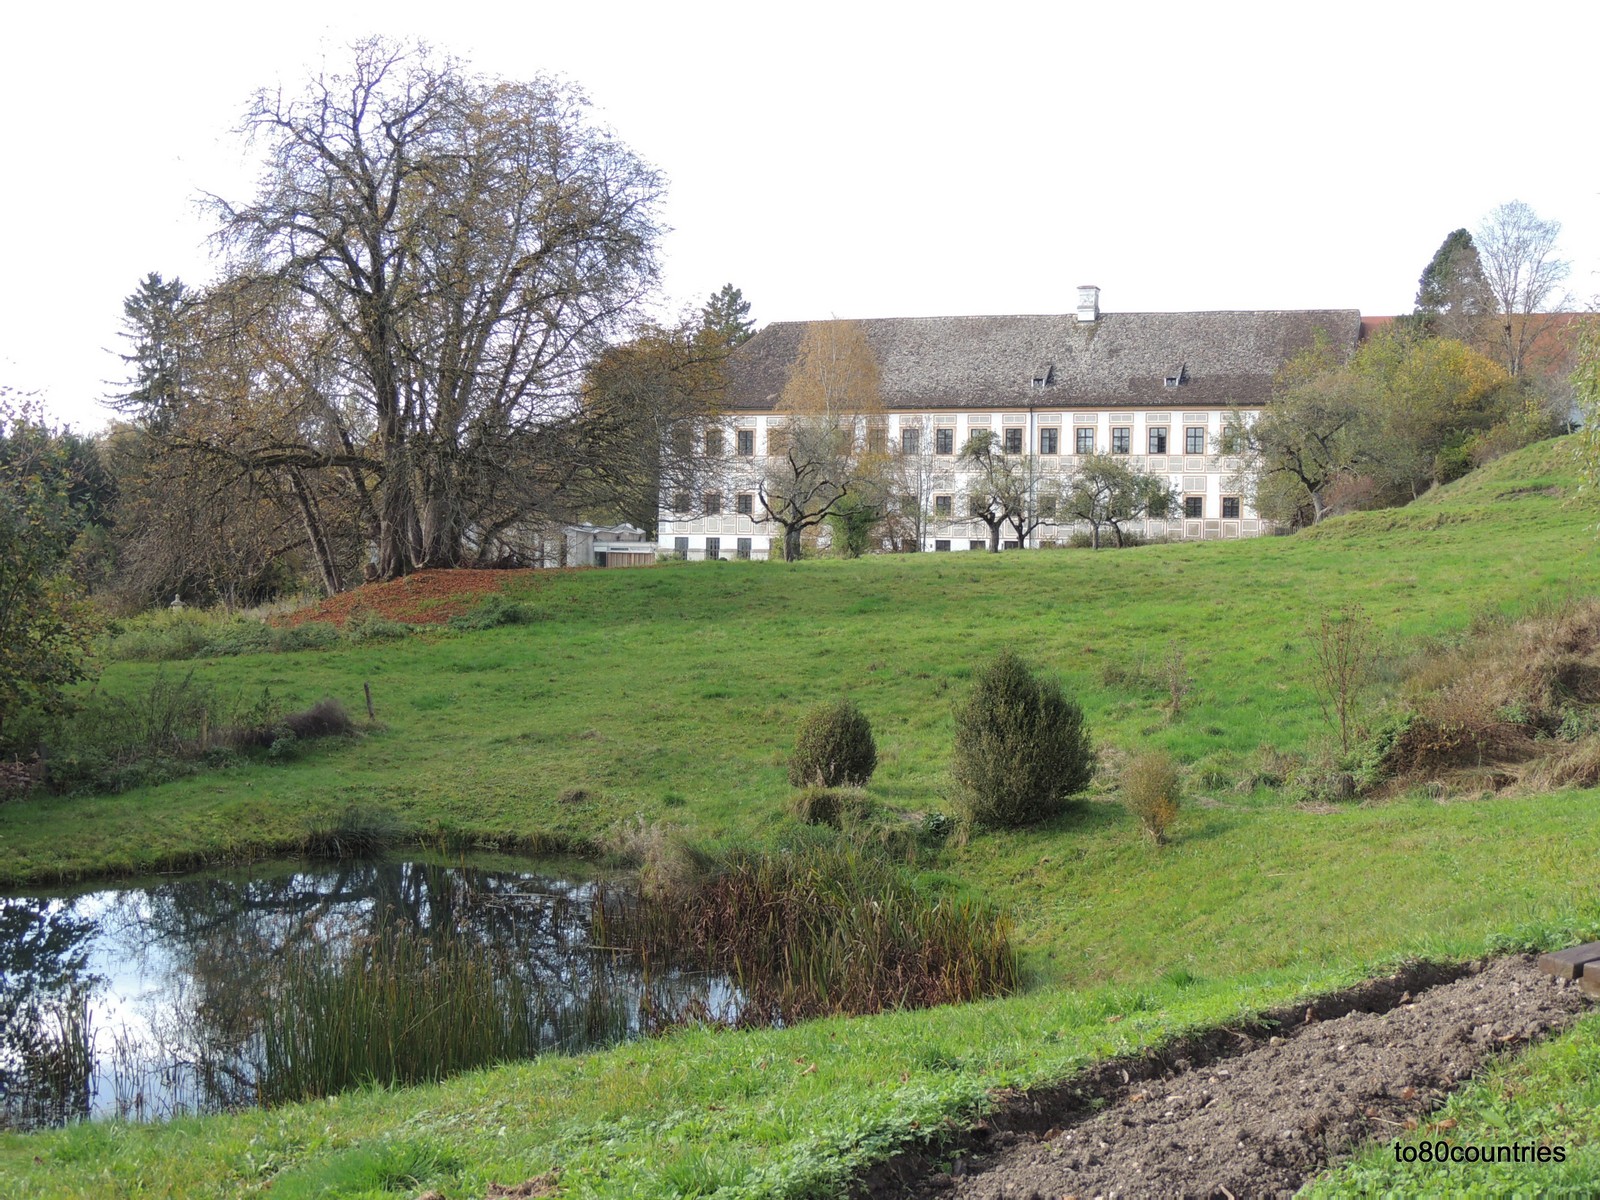 Kloster Wessobrunn